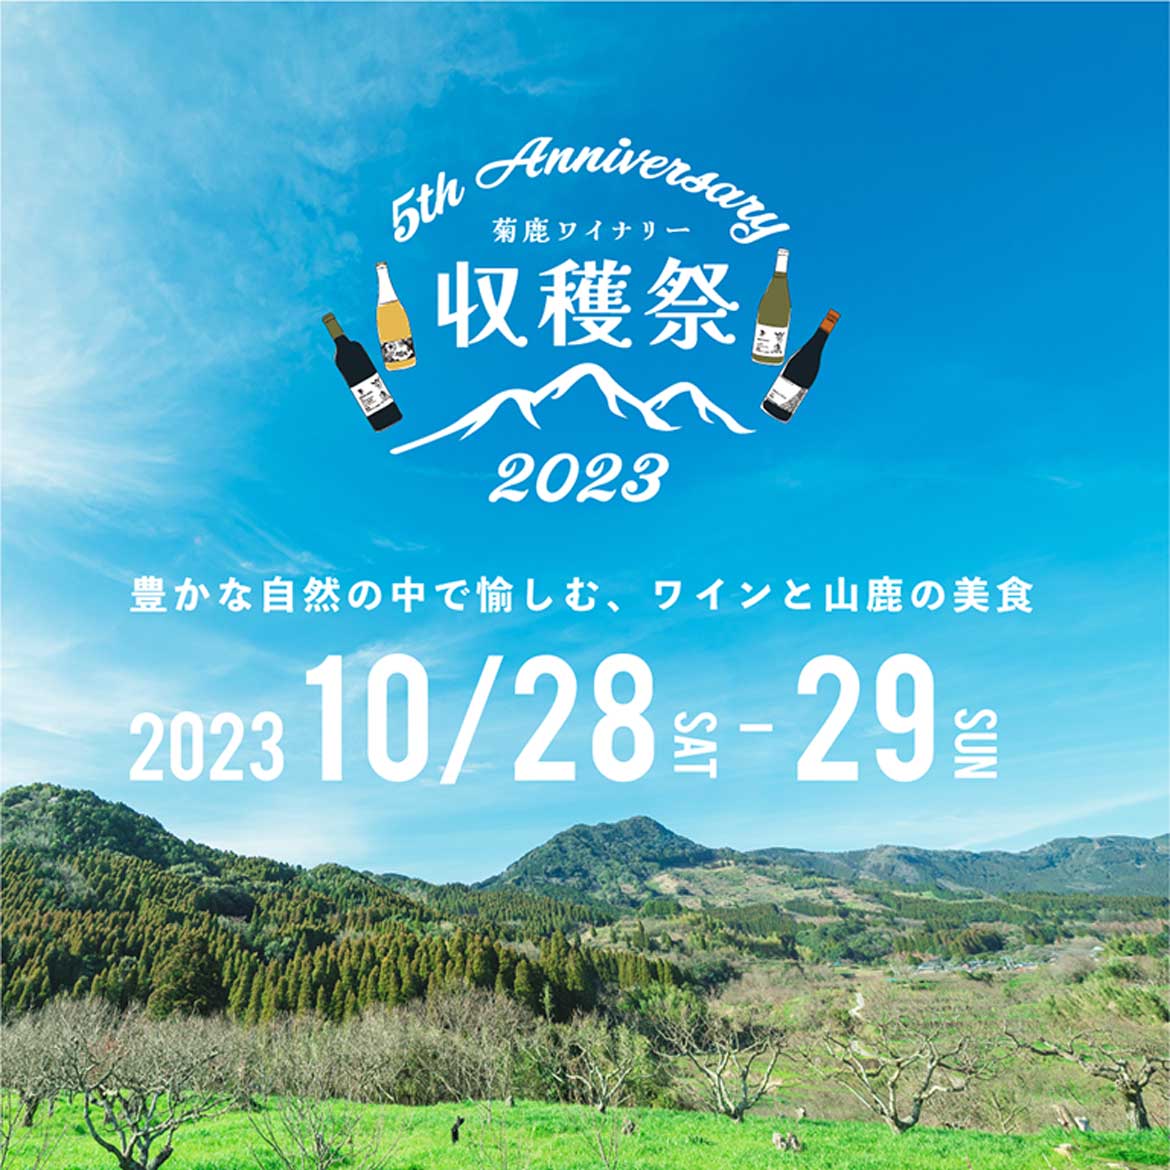 熊本県山鹿市の菊鹿ワイナリーにて「収穫祭2023」10/28・29開催